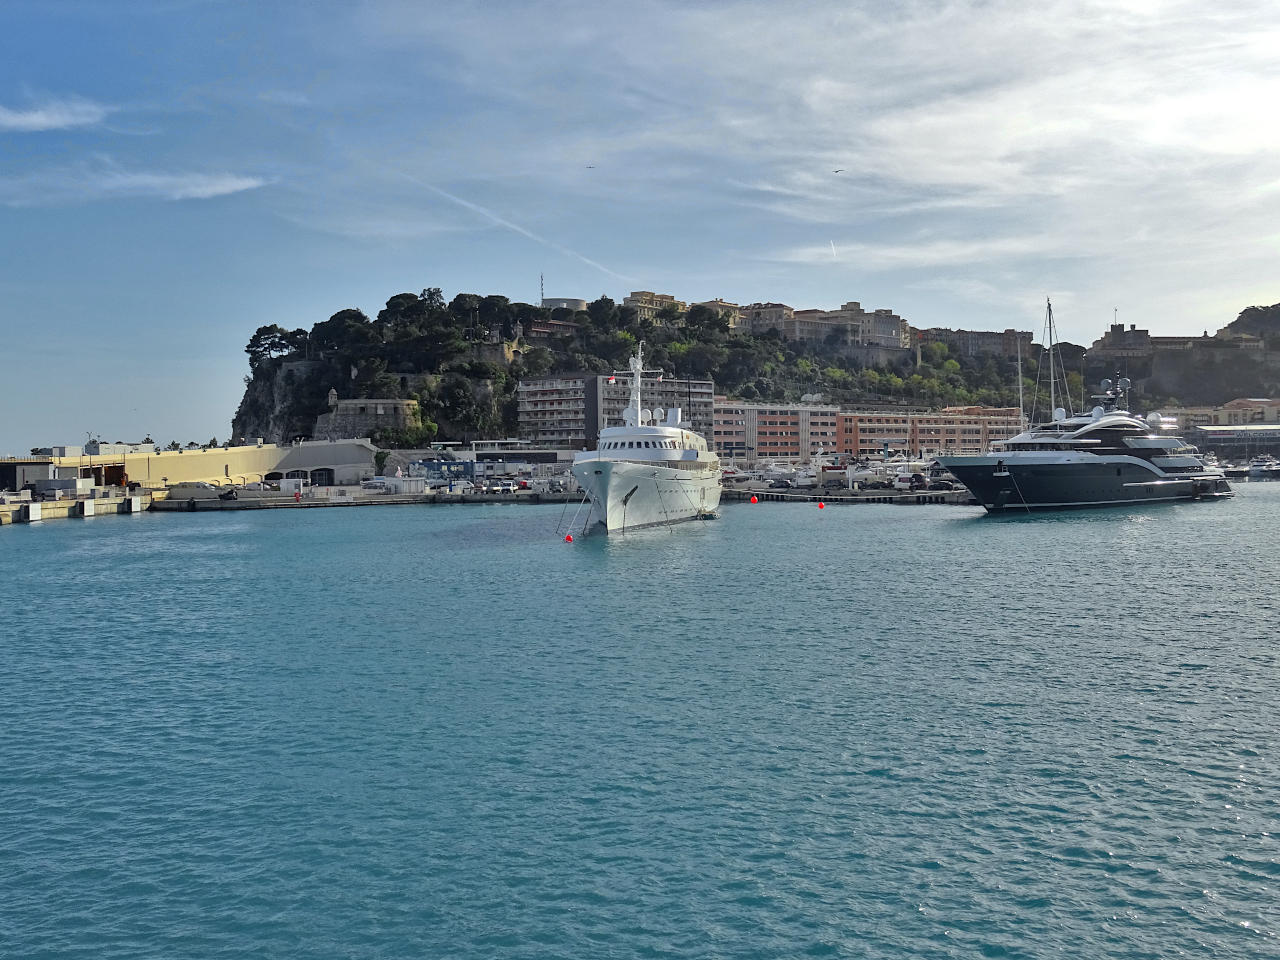 port Hercule de Monaco